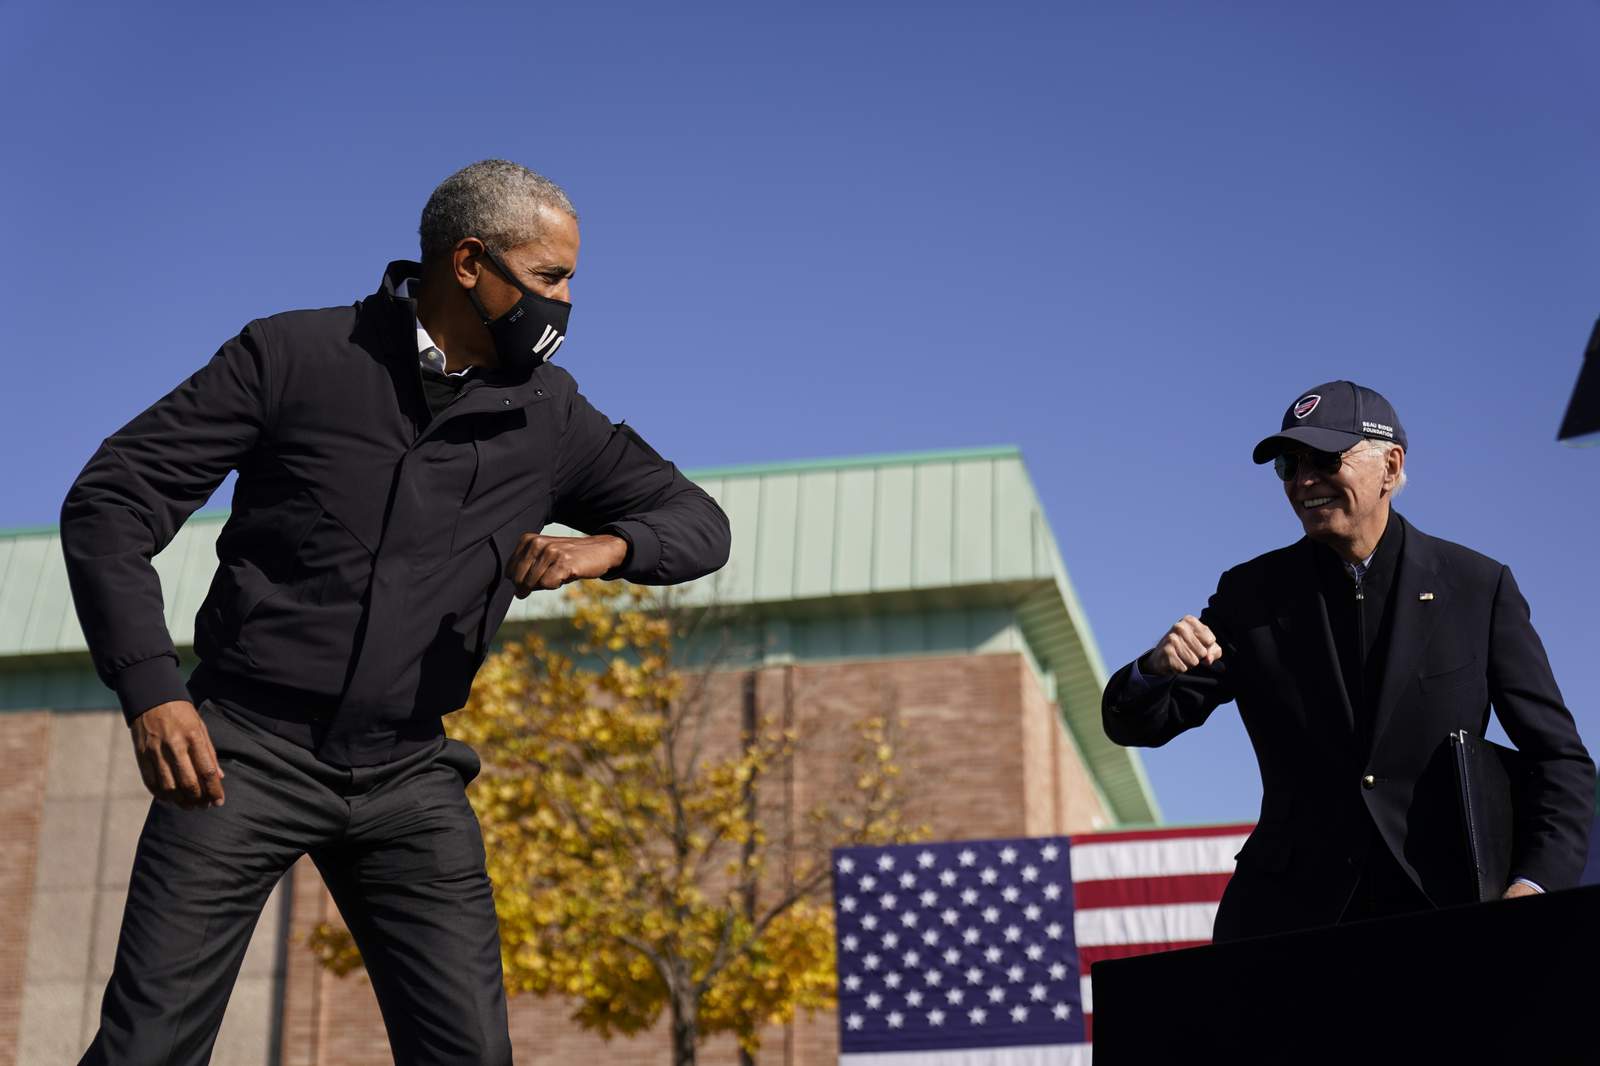 Barack Obama joins Joe Biden at Detroit campaign event